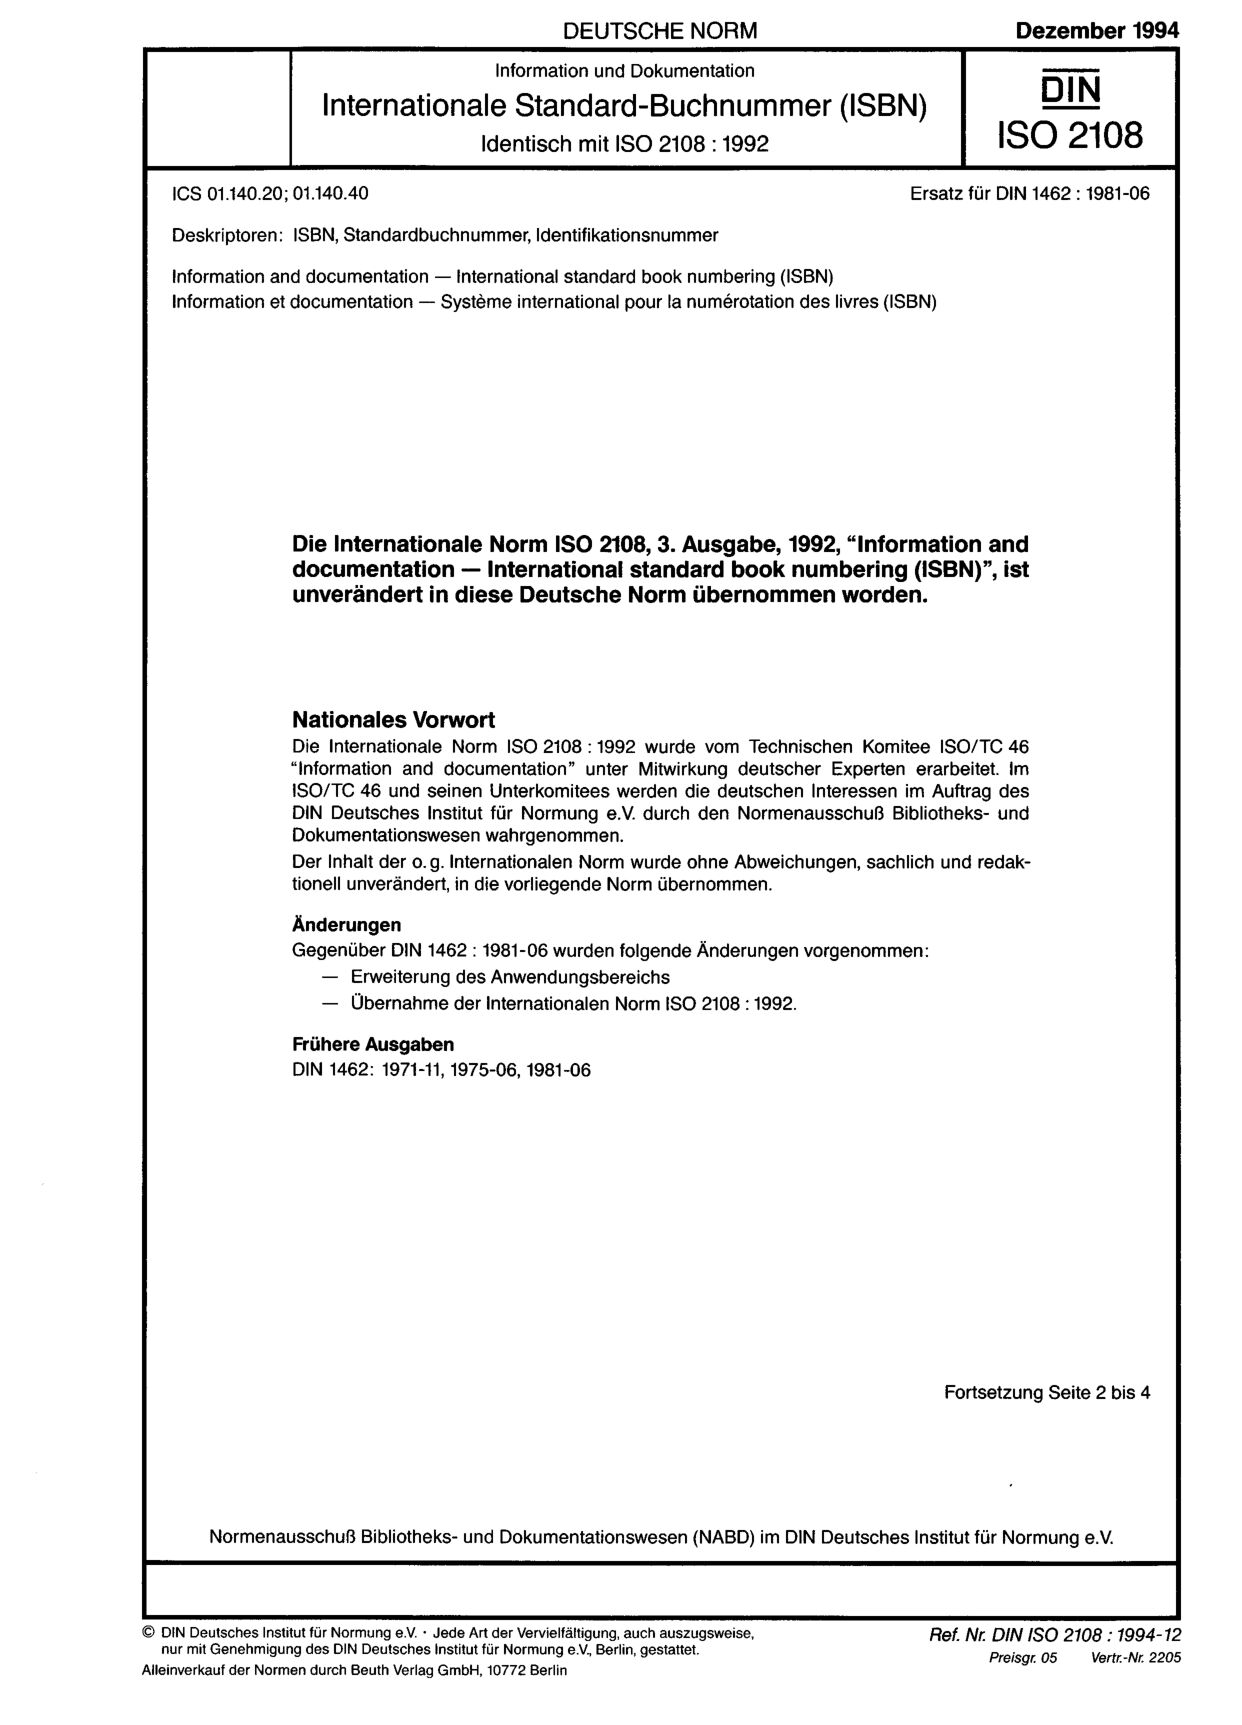 DIN ISO 2108:1994-12封面图